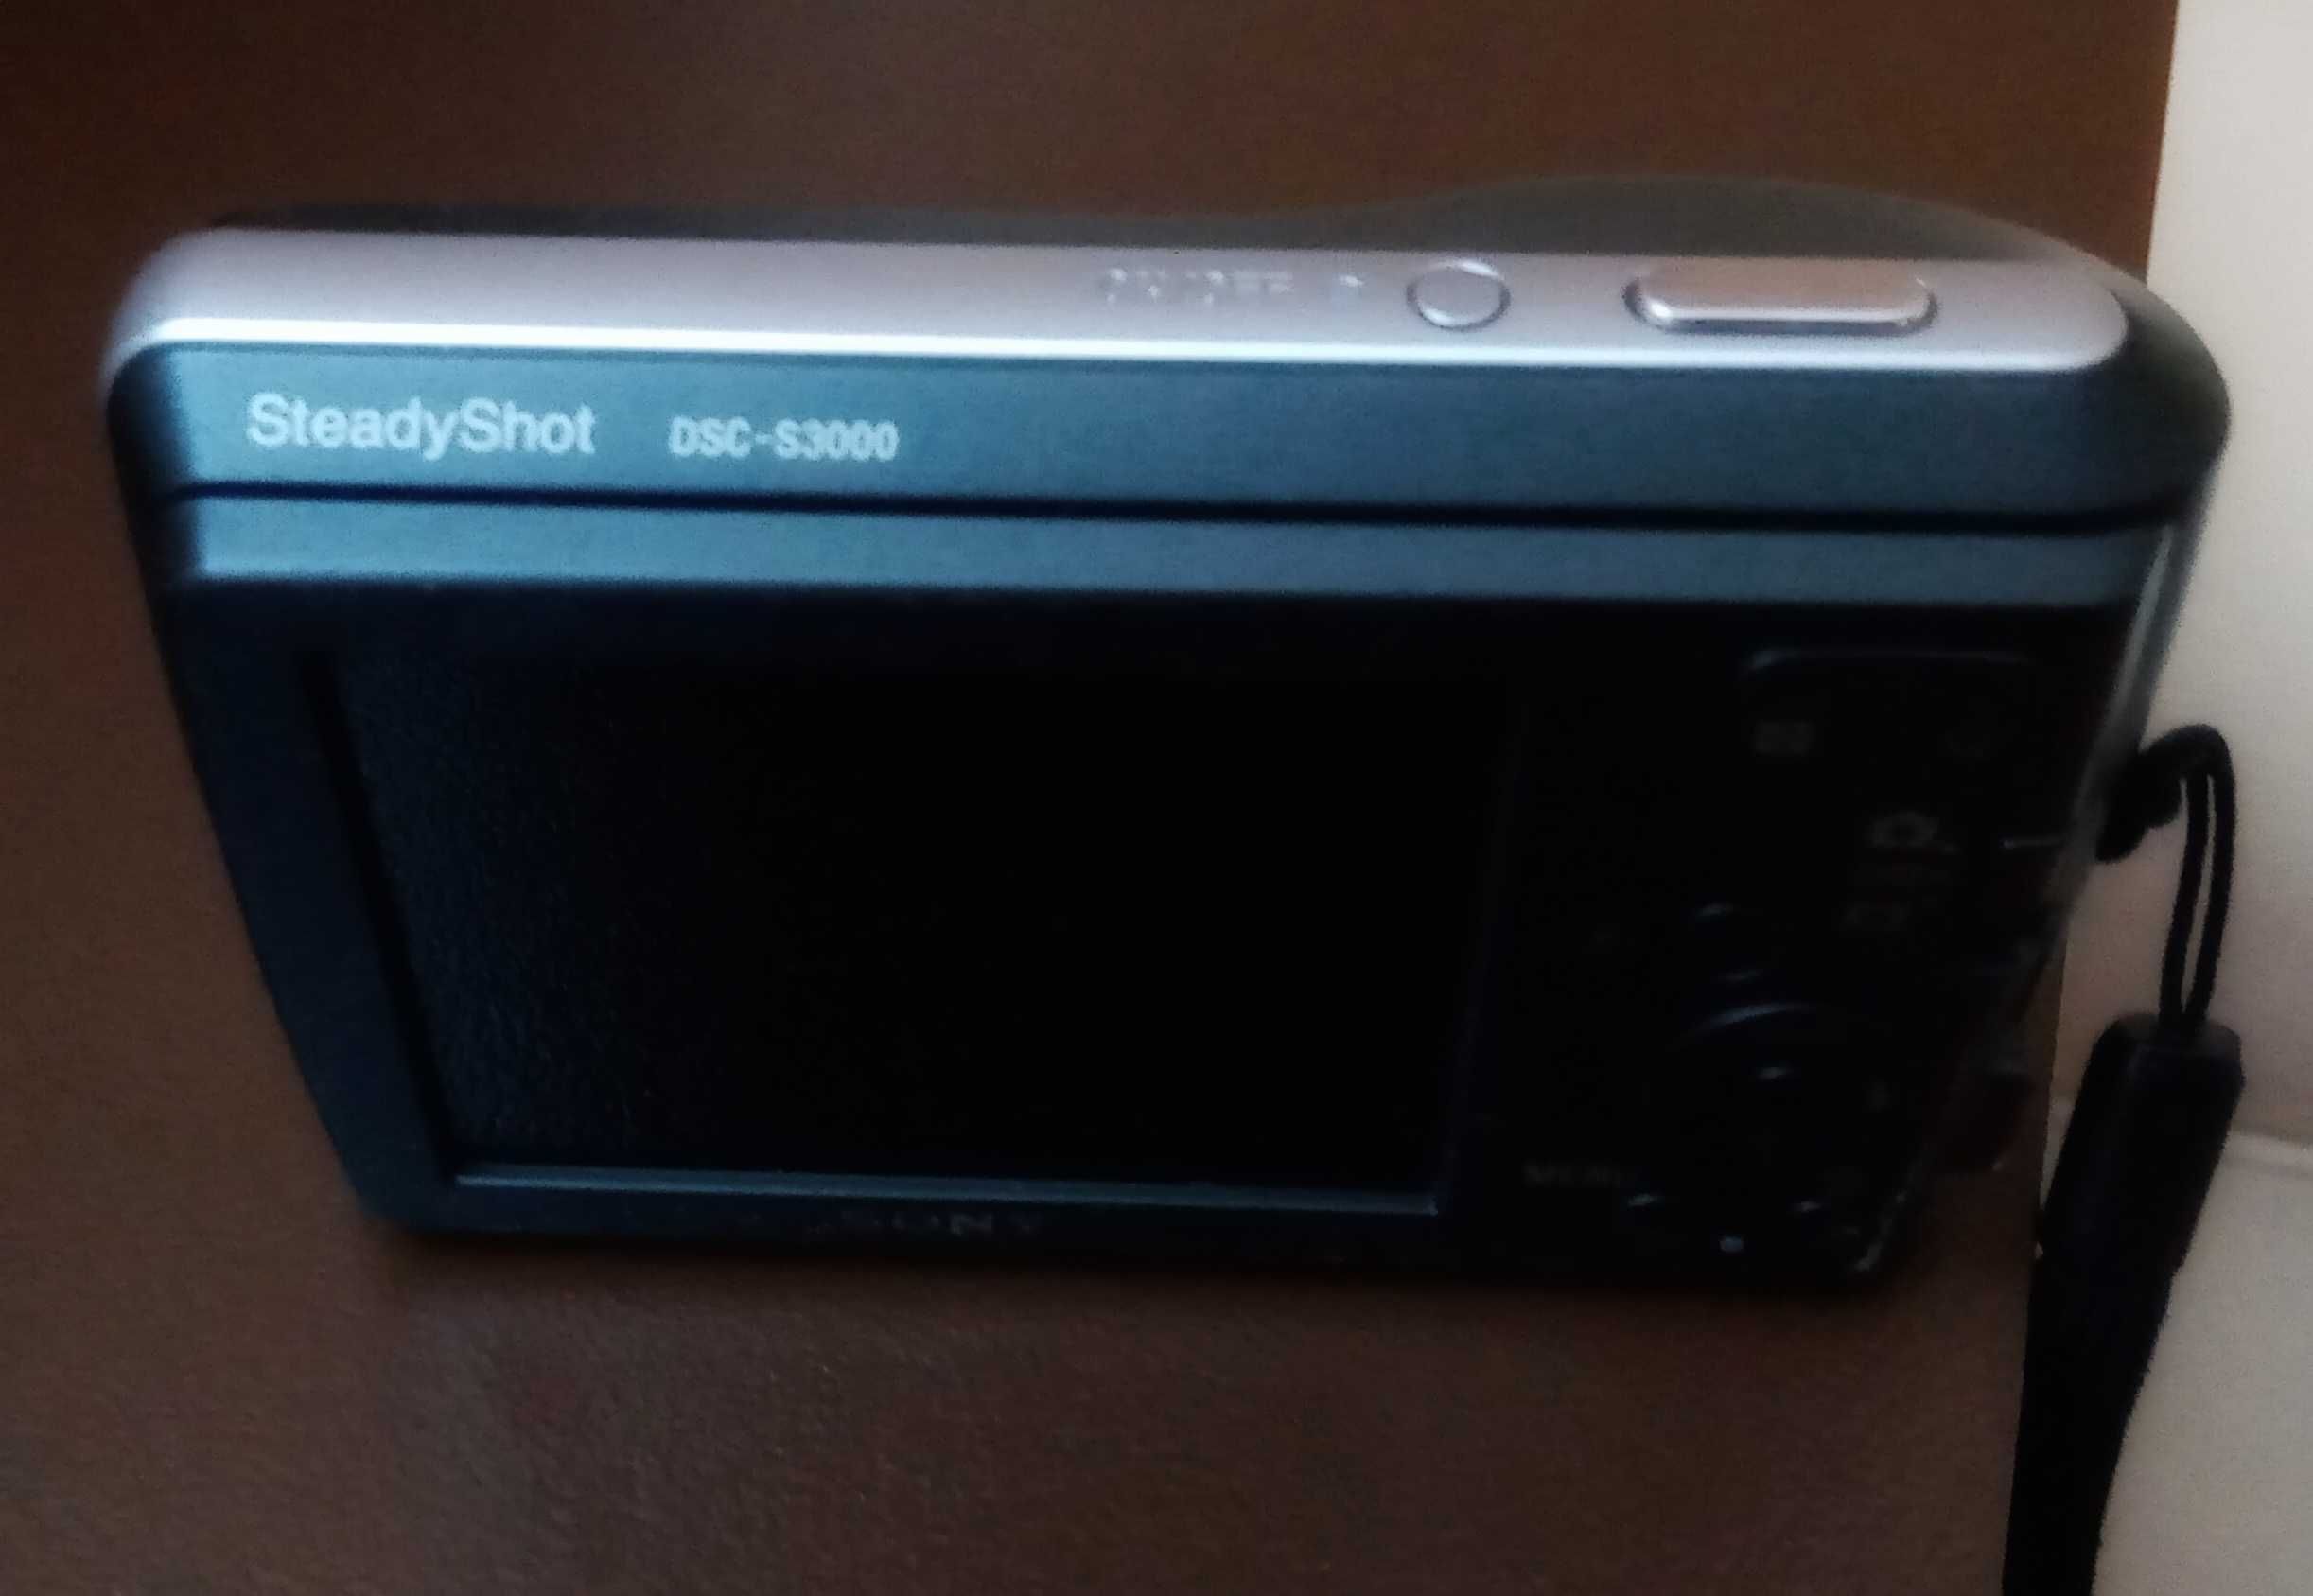 Sony Steady Shot DSC -S3000 фотоапарат